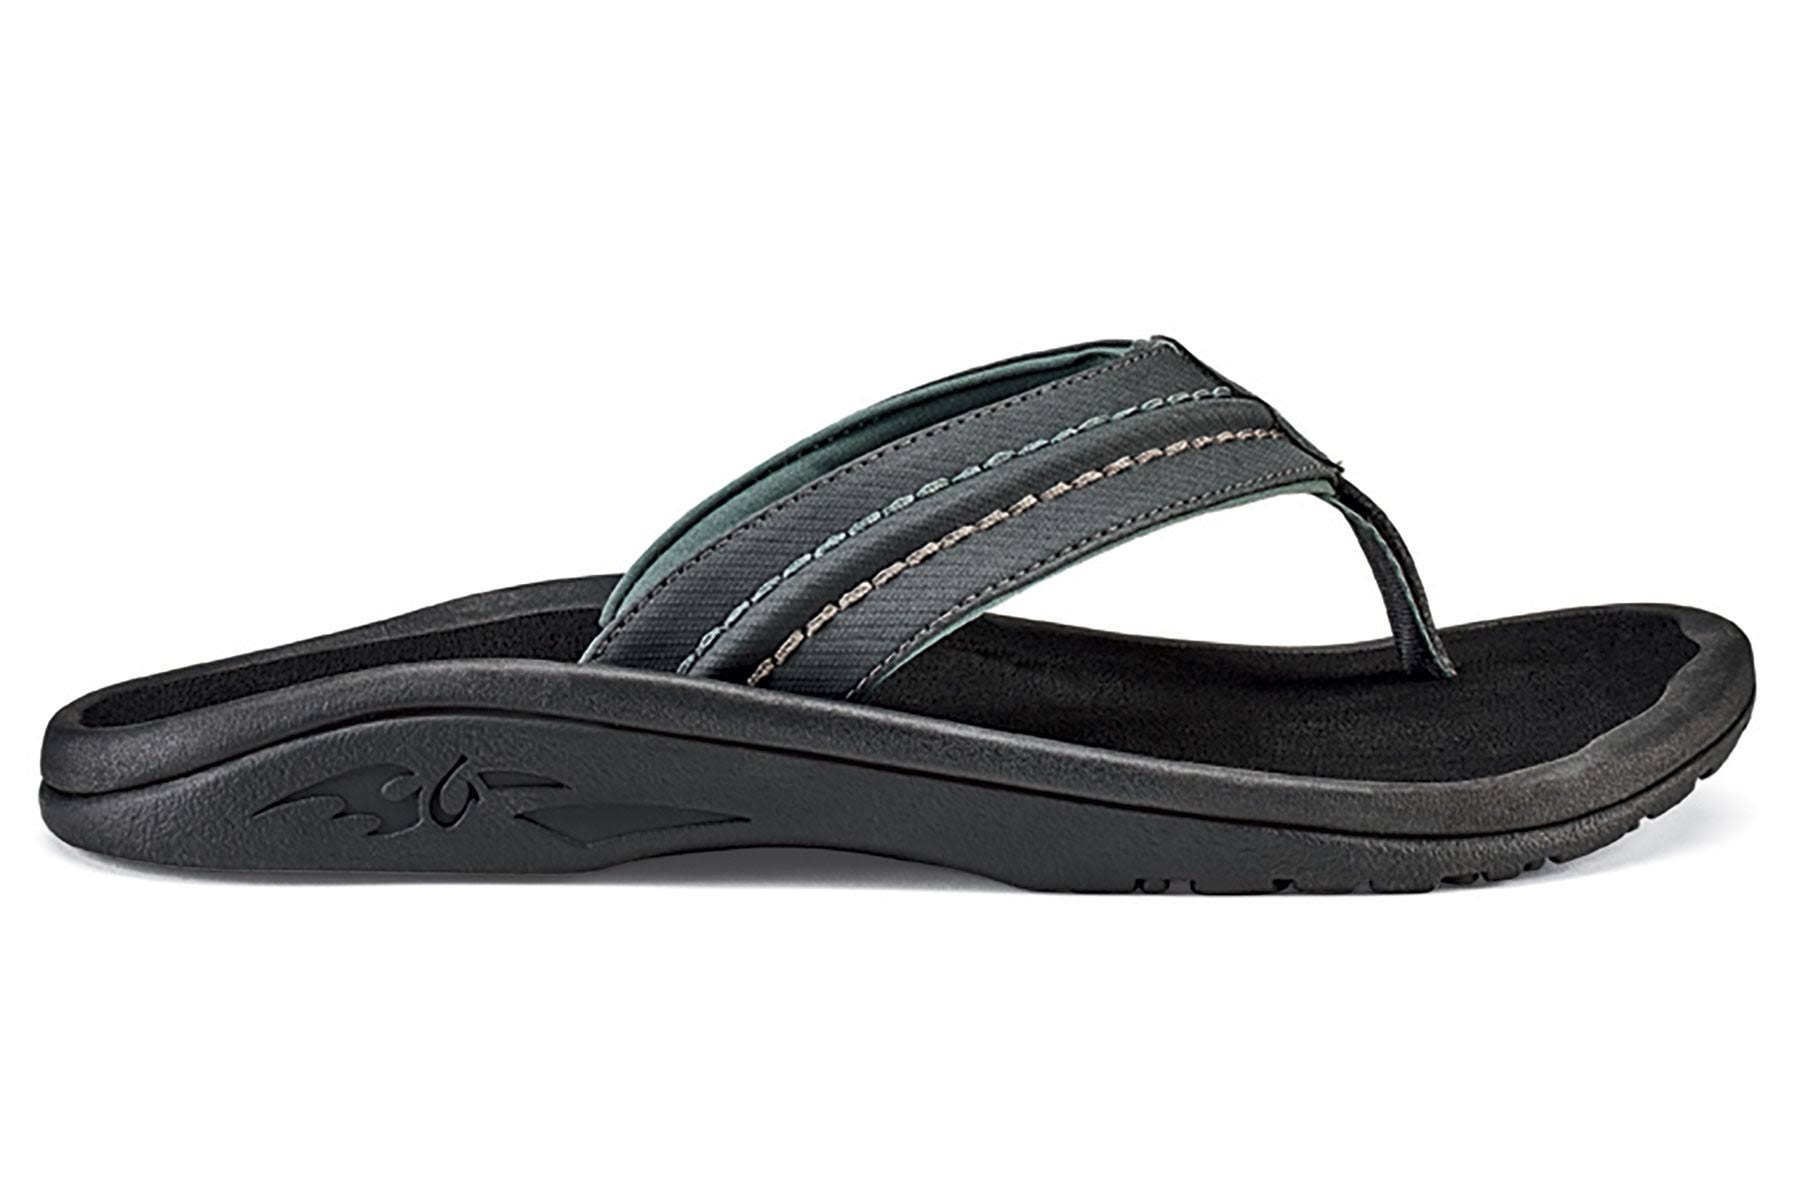 OluKai Men's Hokua Flip Flops Sandals - Black Dark Shadow, 13 US